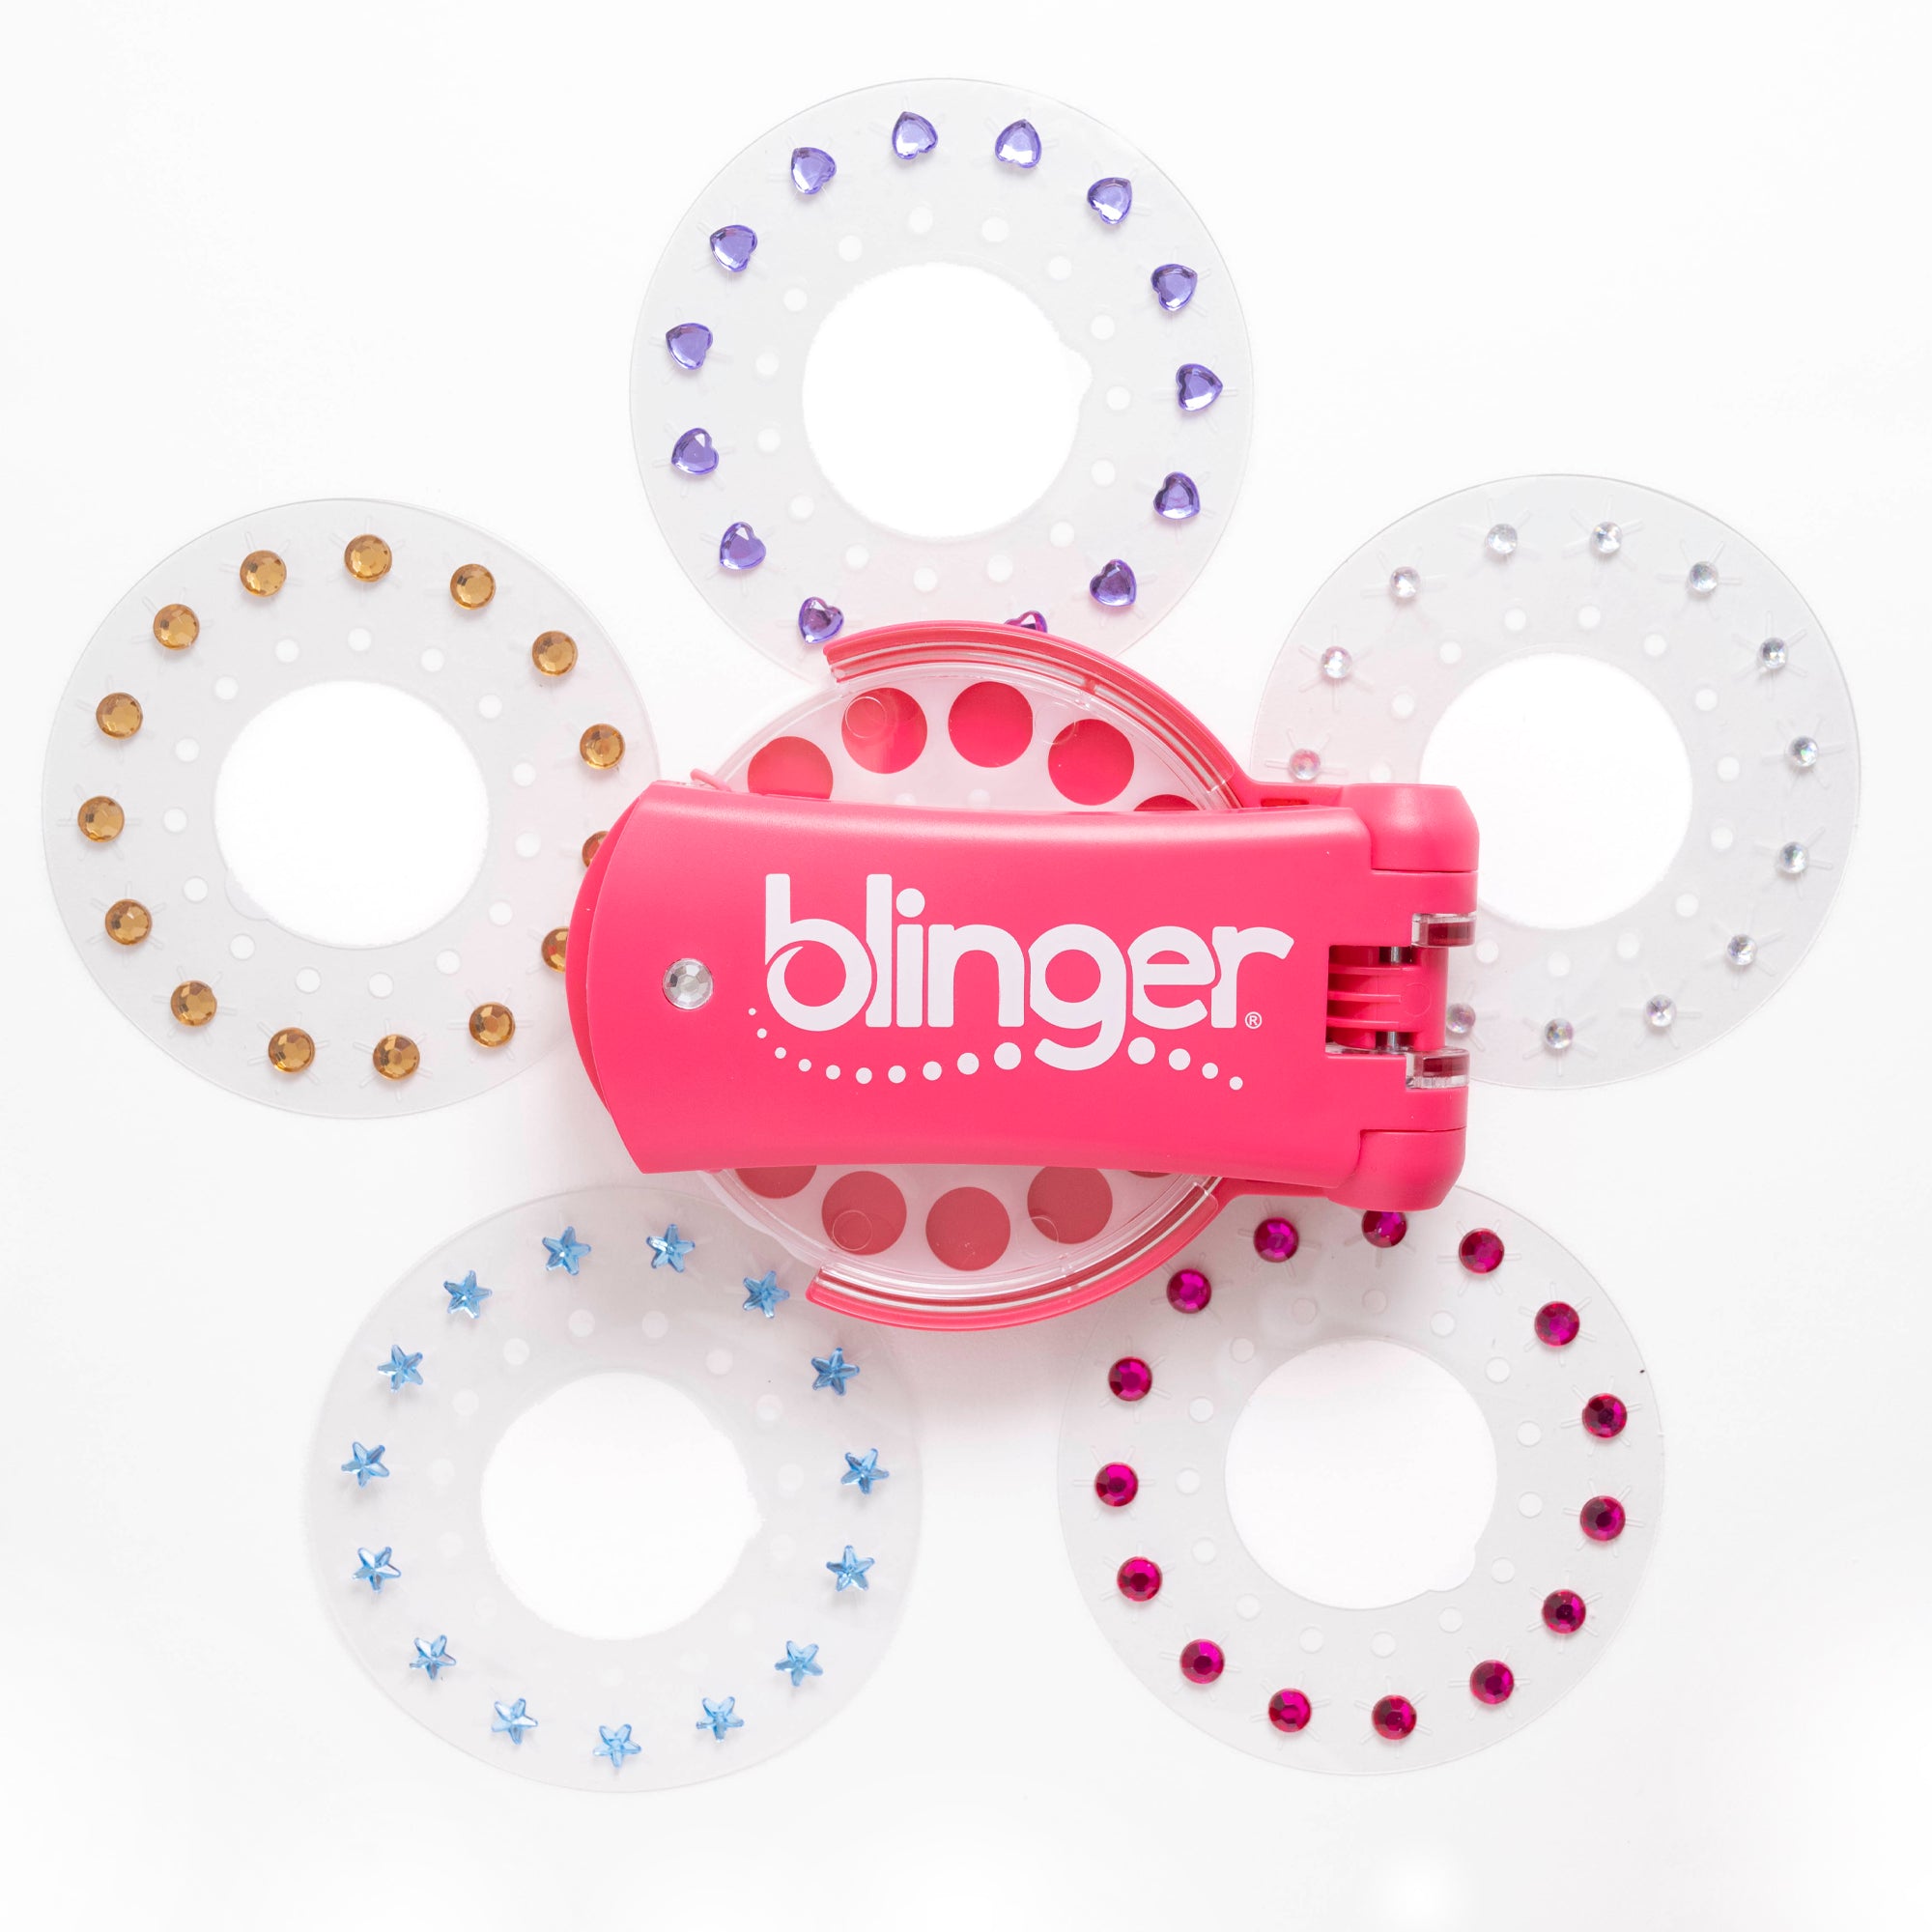 blinger® Dazzling Collection Starter Kit with blinger® Gem Stamper + 75 Colorful Acrylic Gems